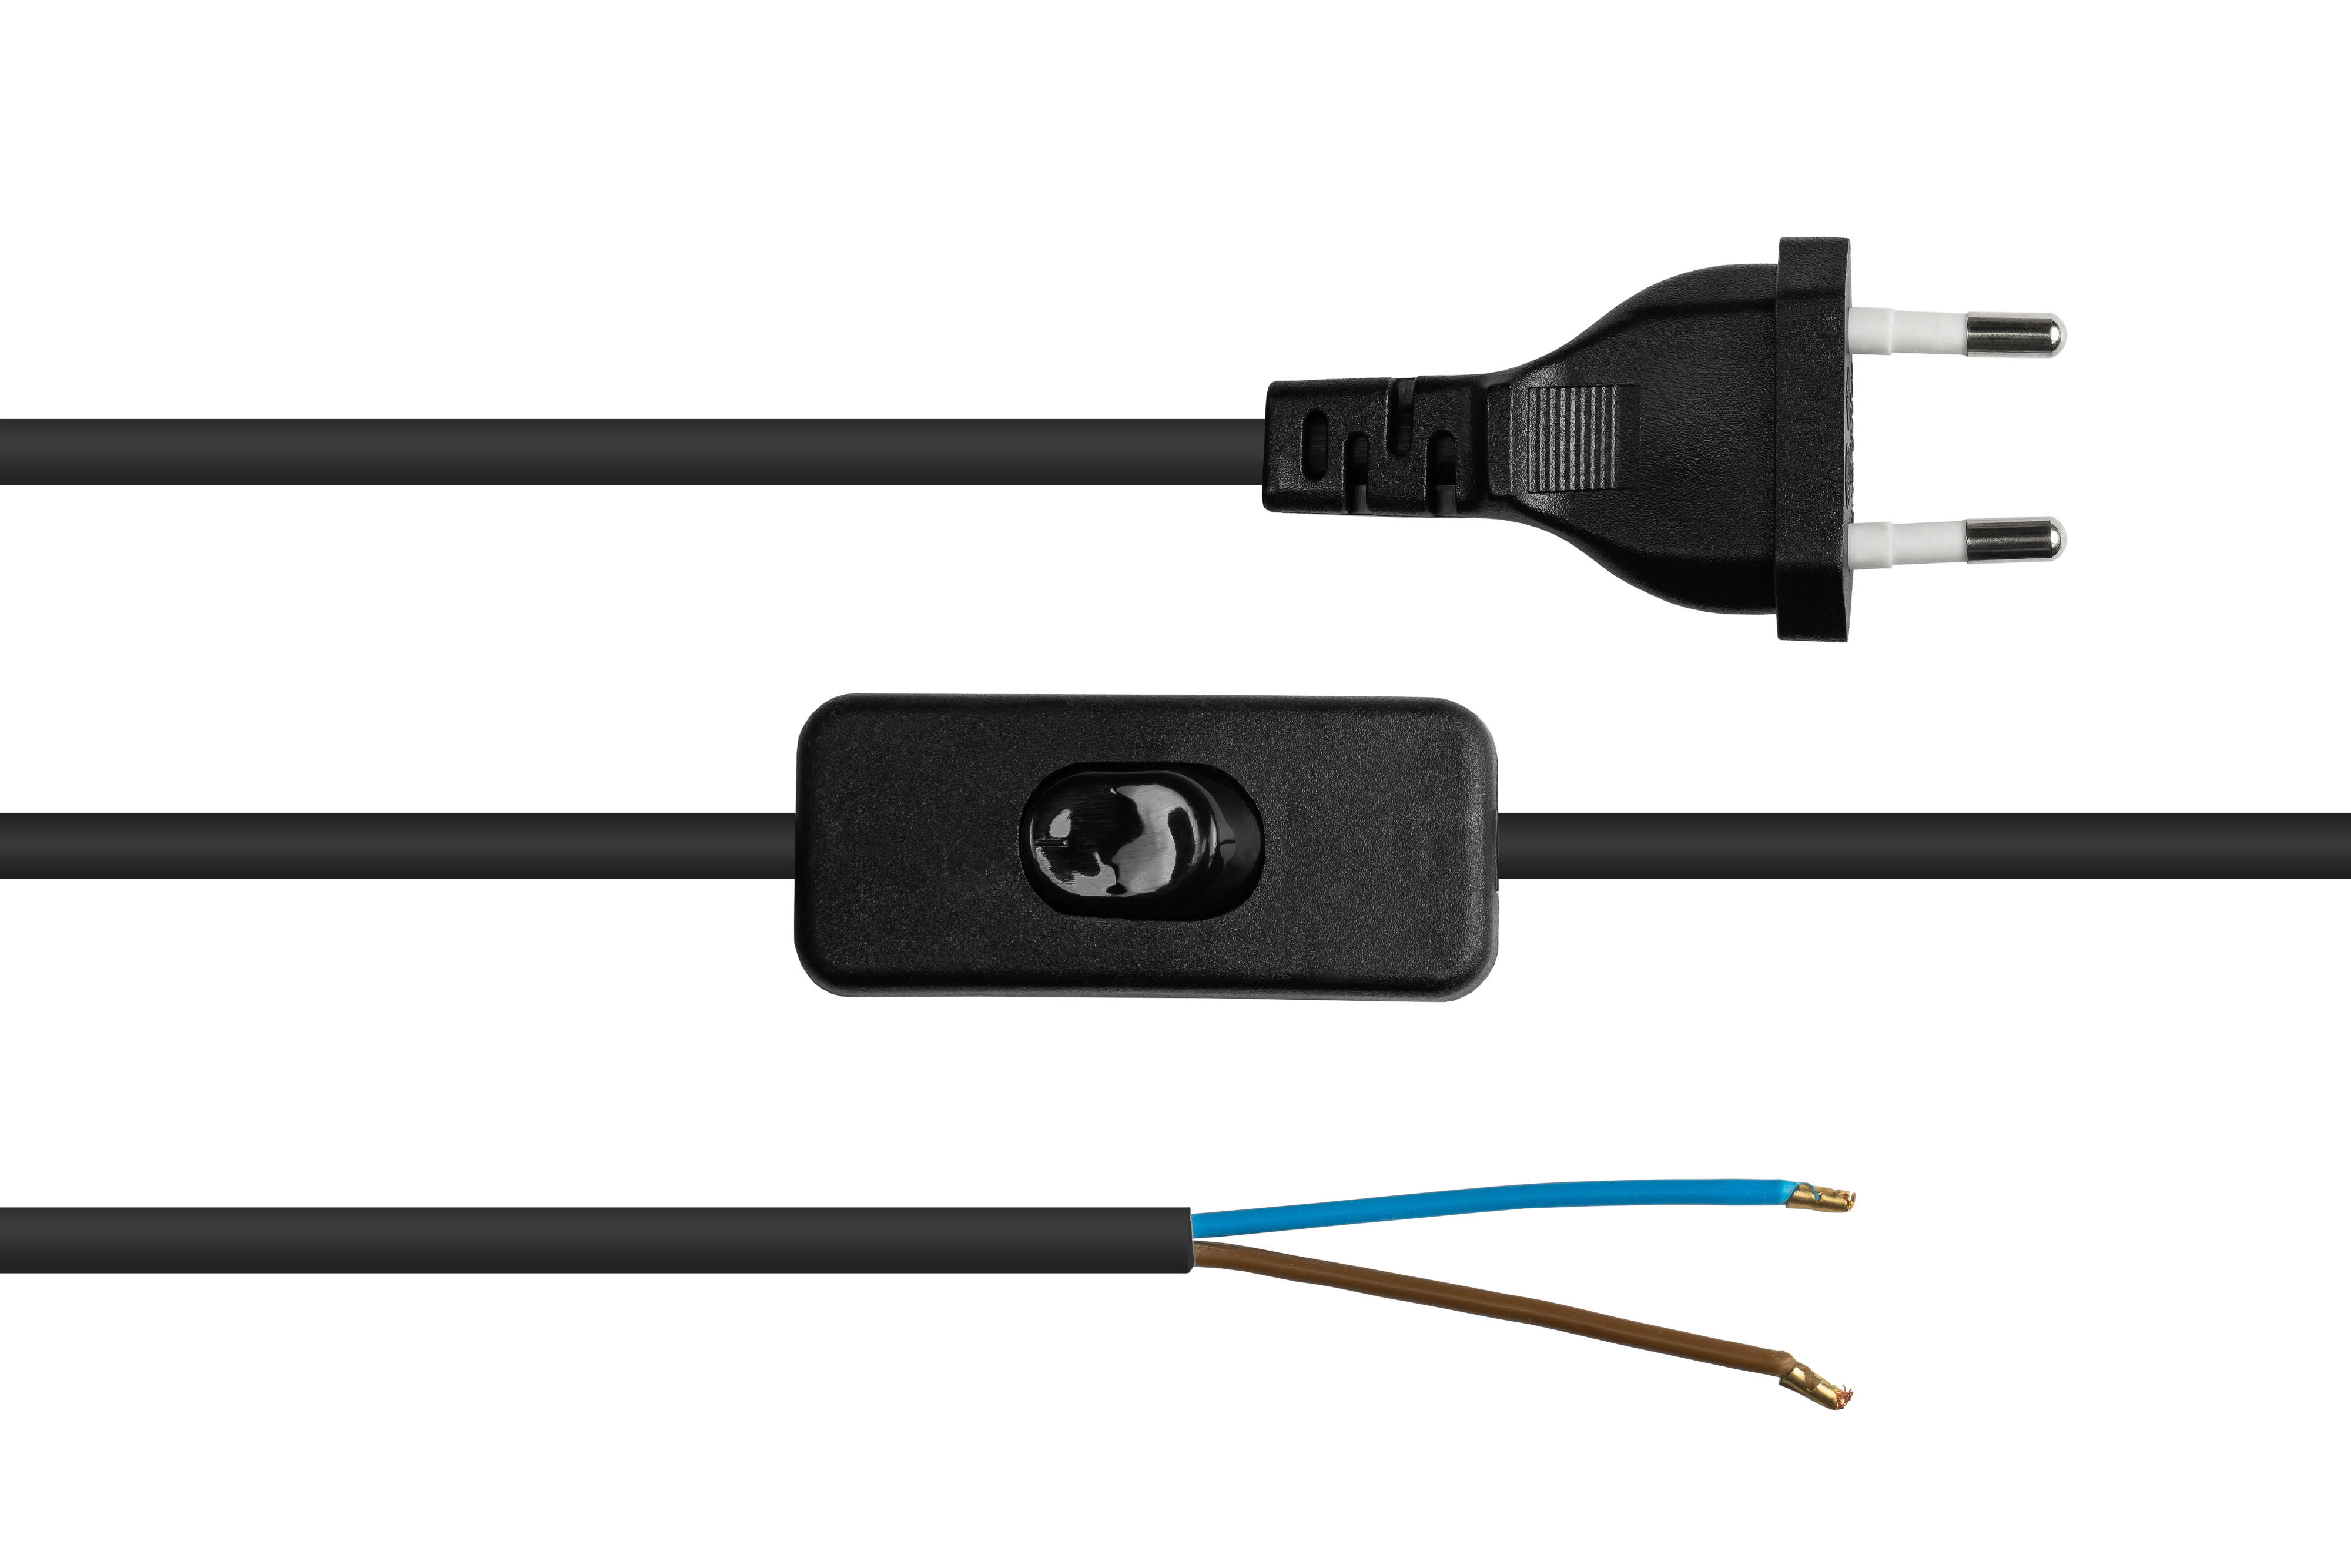 GOOD CONNECTIONS schwarz, Typ C Schalter, 0,75 (gerade) mit Stromkabel, Enden, mm² an Euro-Euro-Stecker schwarz abisolierte